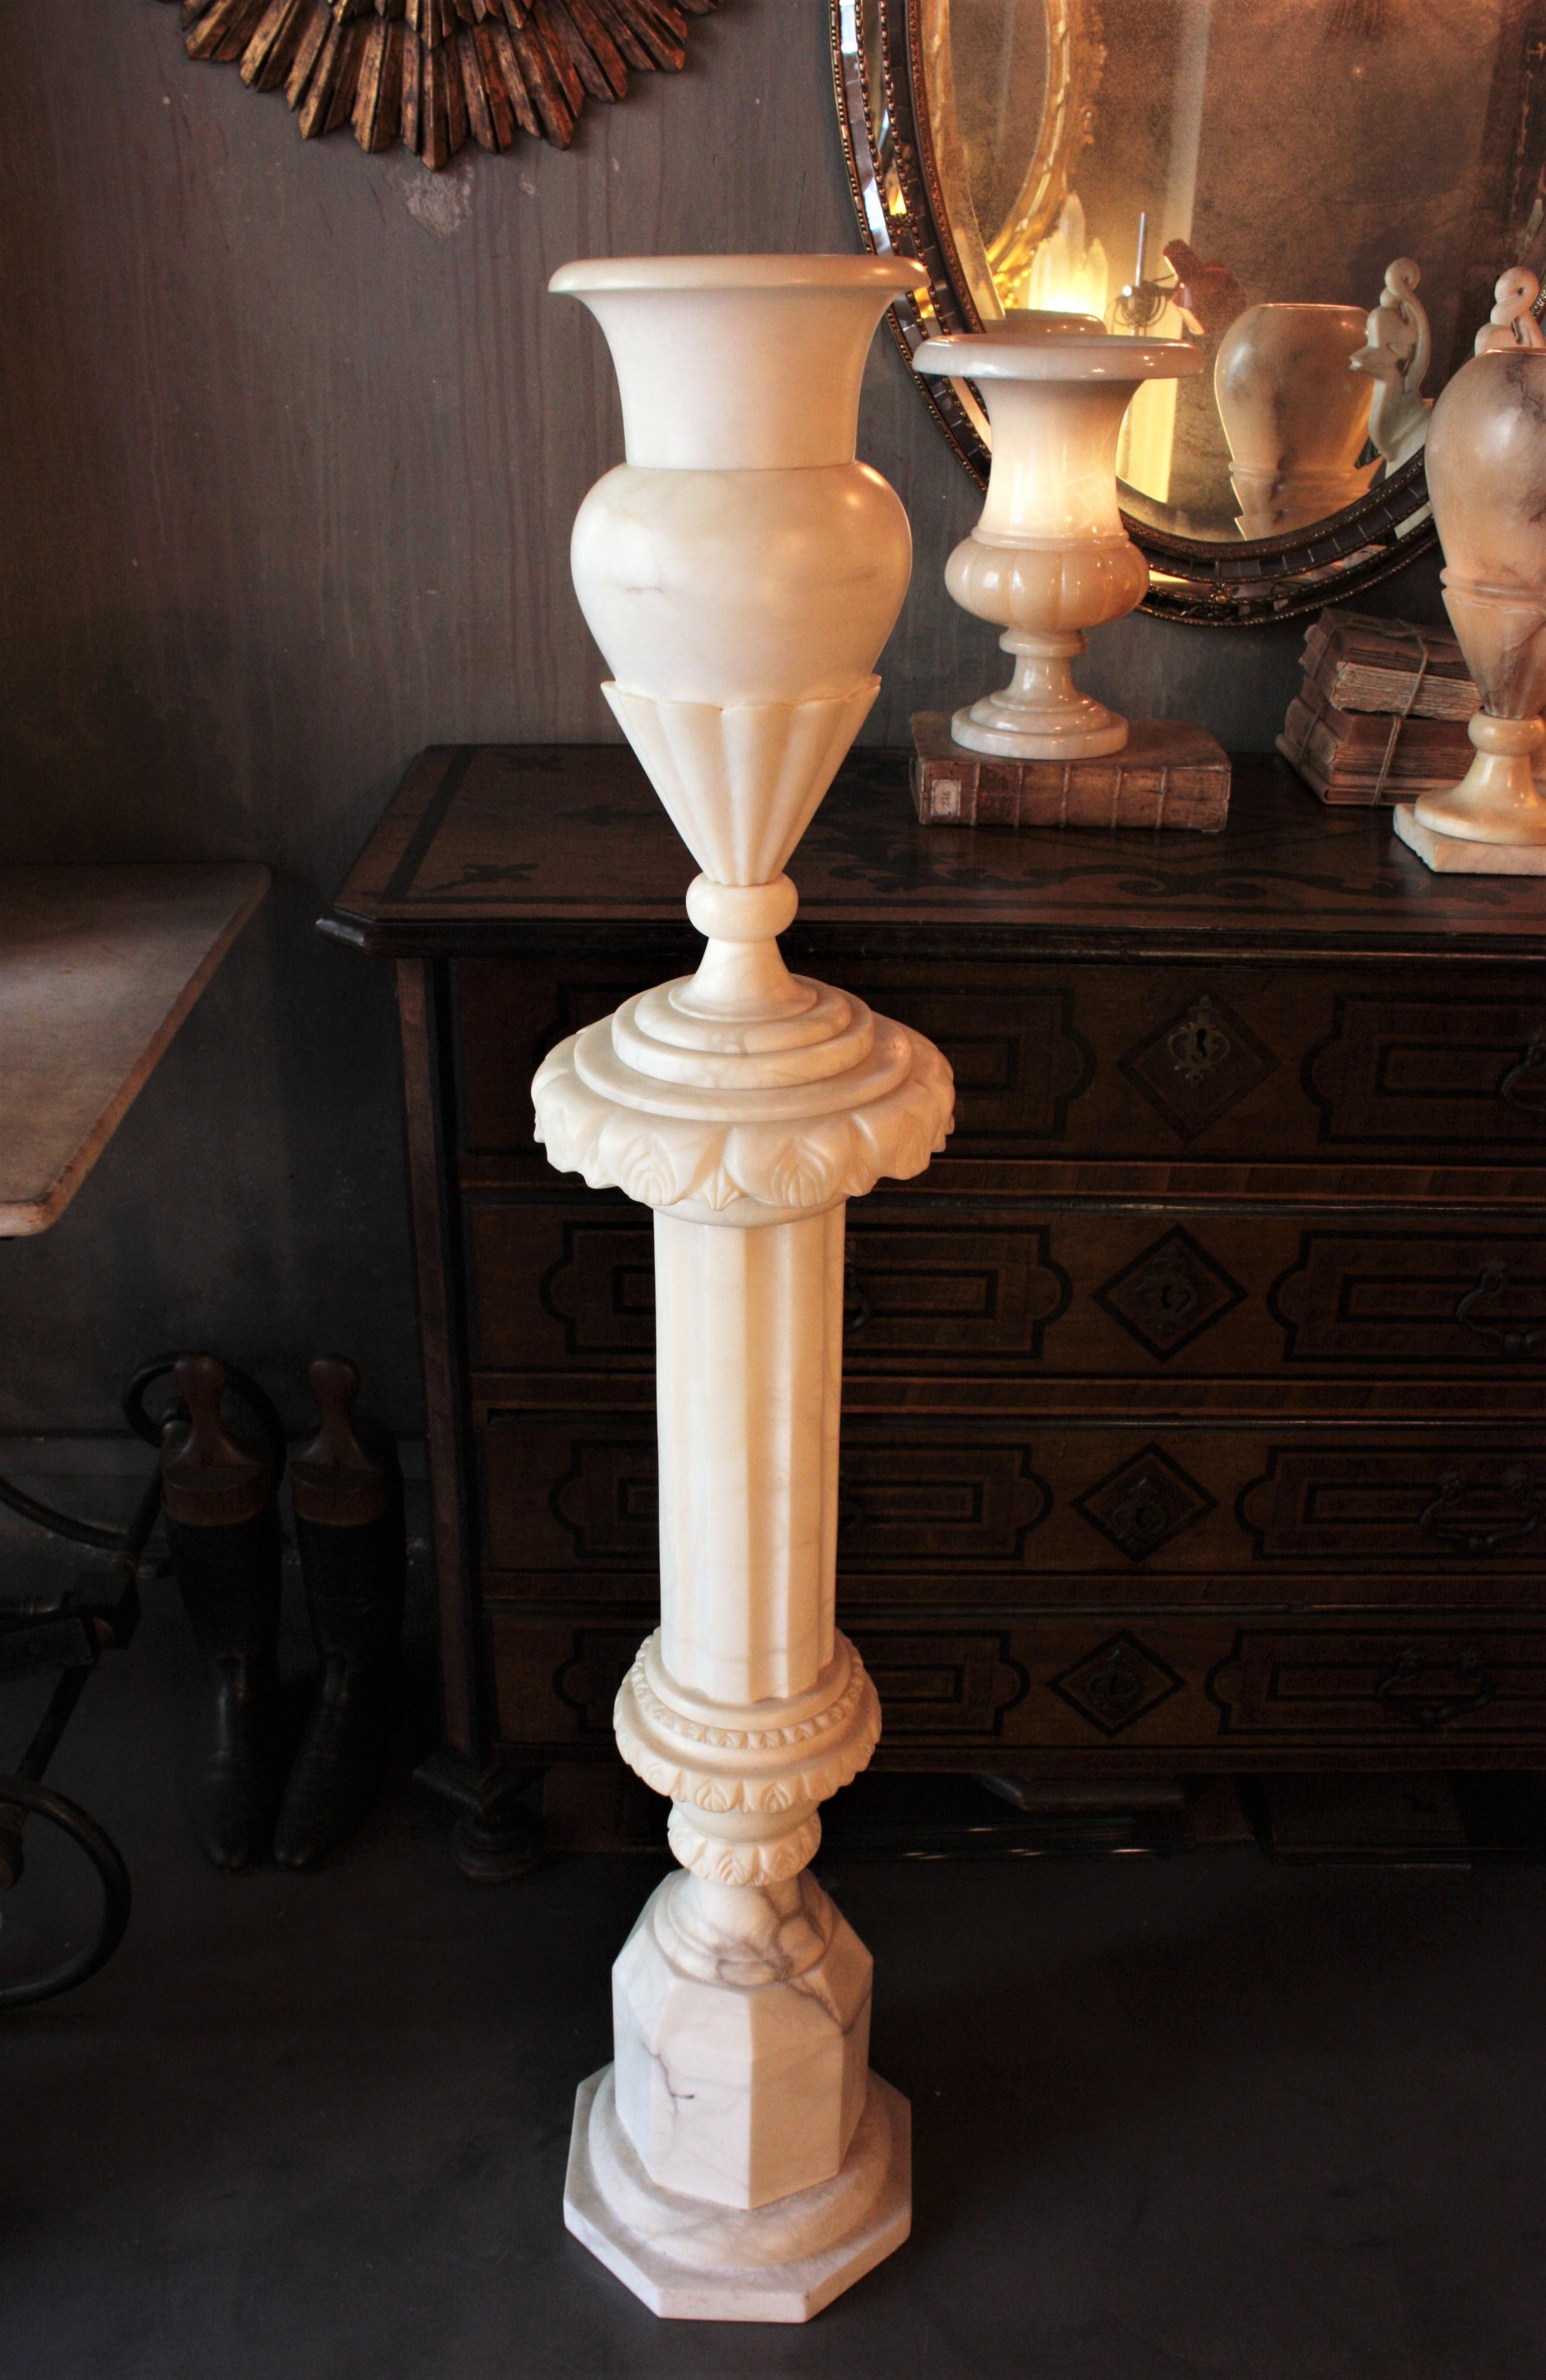 Exceptionnel lampadaire Art déco en albâtre sculpté sur colonne, Espagne, années 1930
Ce lampadaire en albâtre d'époque Art déco présente un élégant design néoclassique. La lampe Urn urplighter repose sur un piédestal en forme de colonne avec une